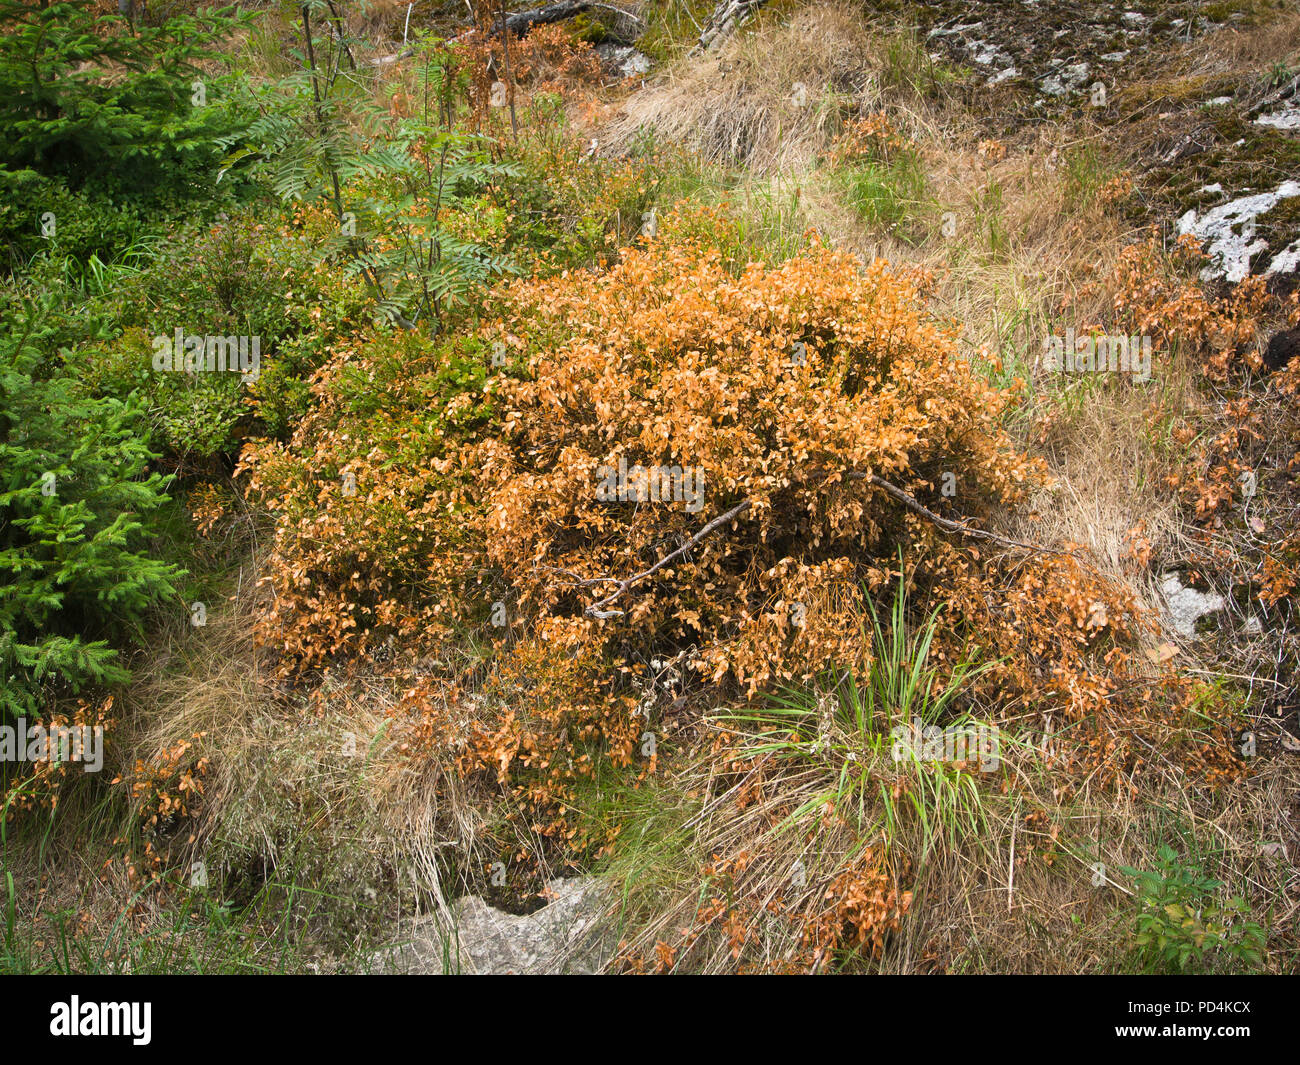 Gli effetti di una estrema asciutta e calda estate osservato agevolmente nei boschi intorno a Oslo Norvegia, asciugata e morti di mirtillo europeo piante Foto Stock